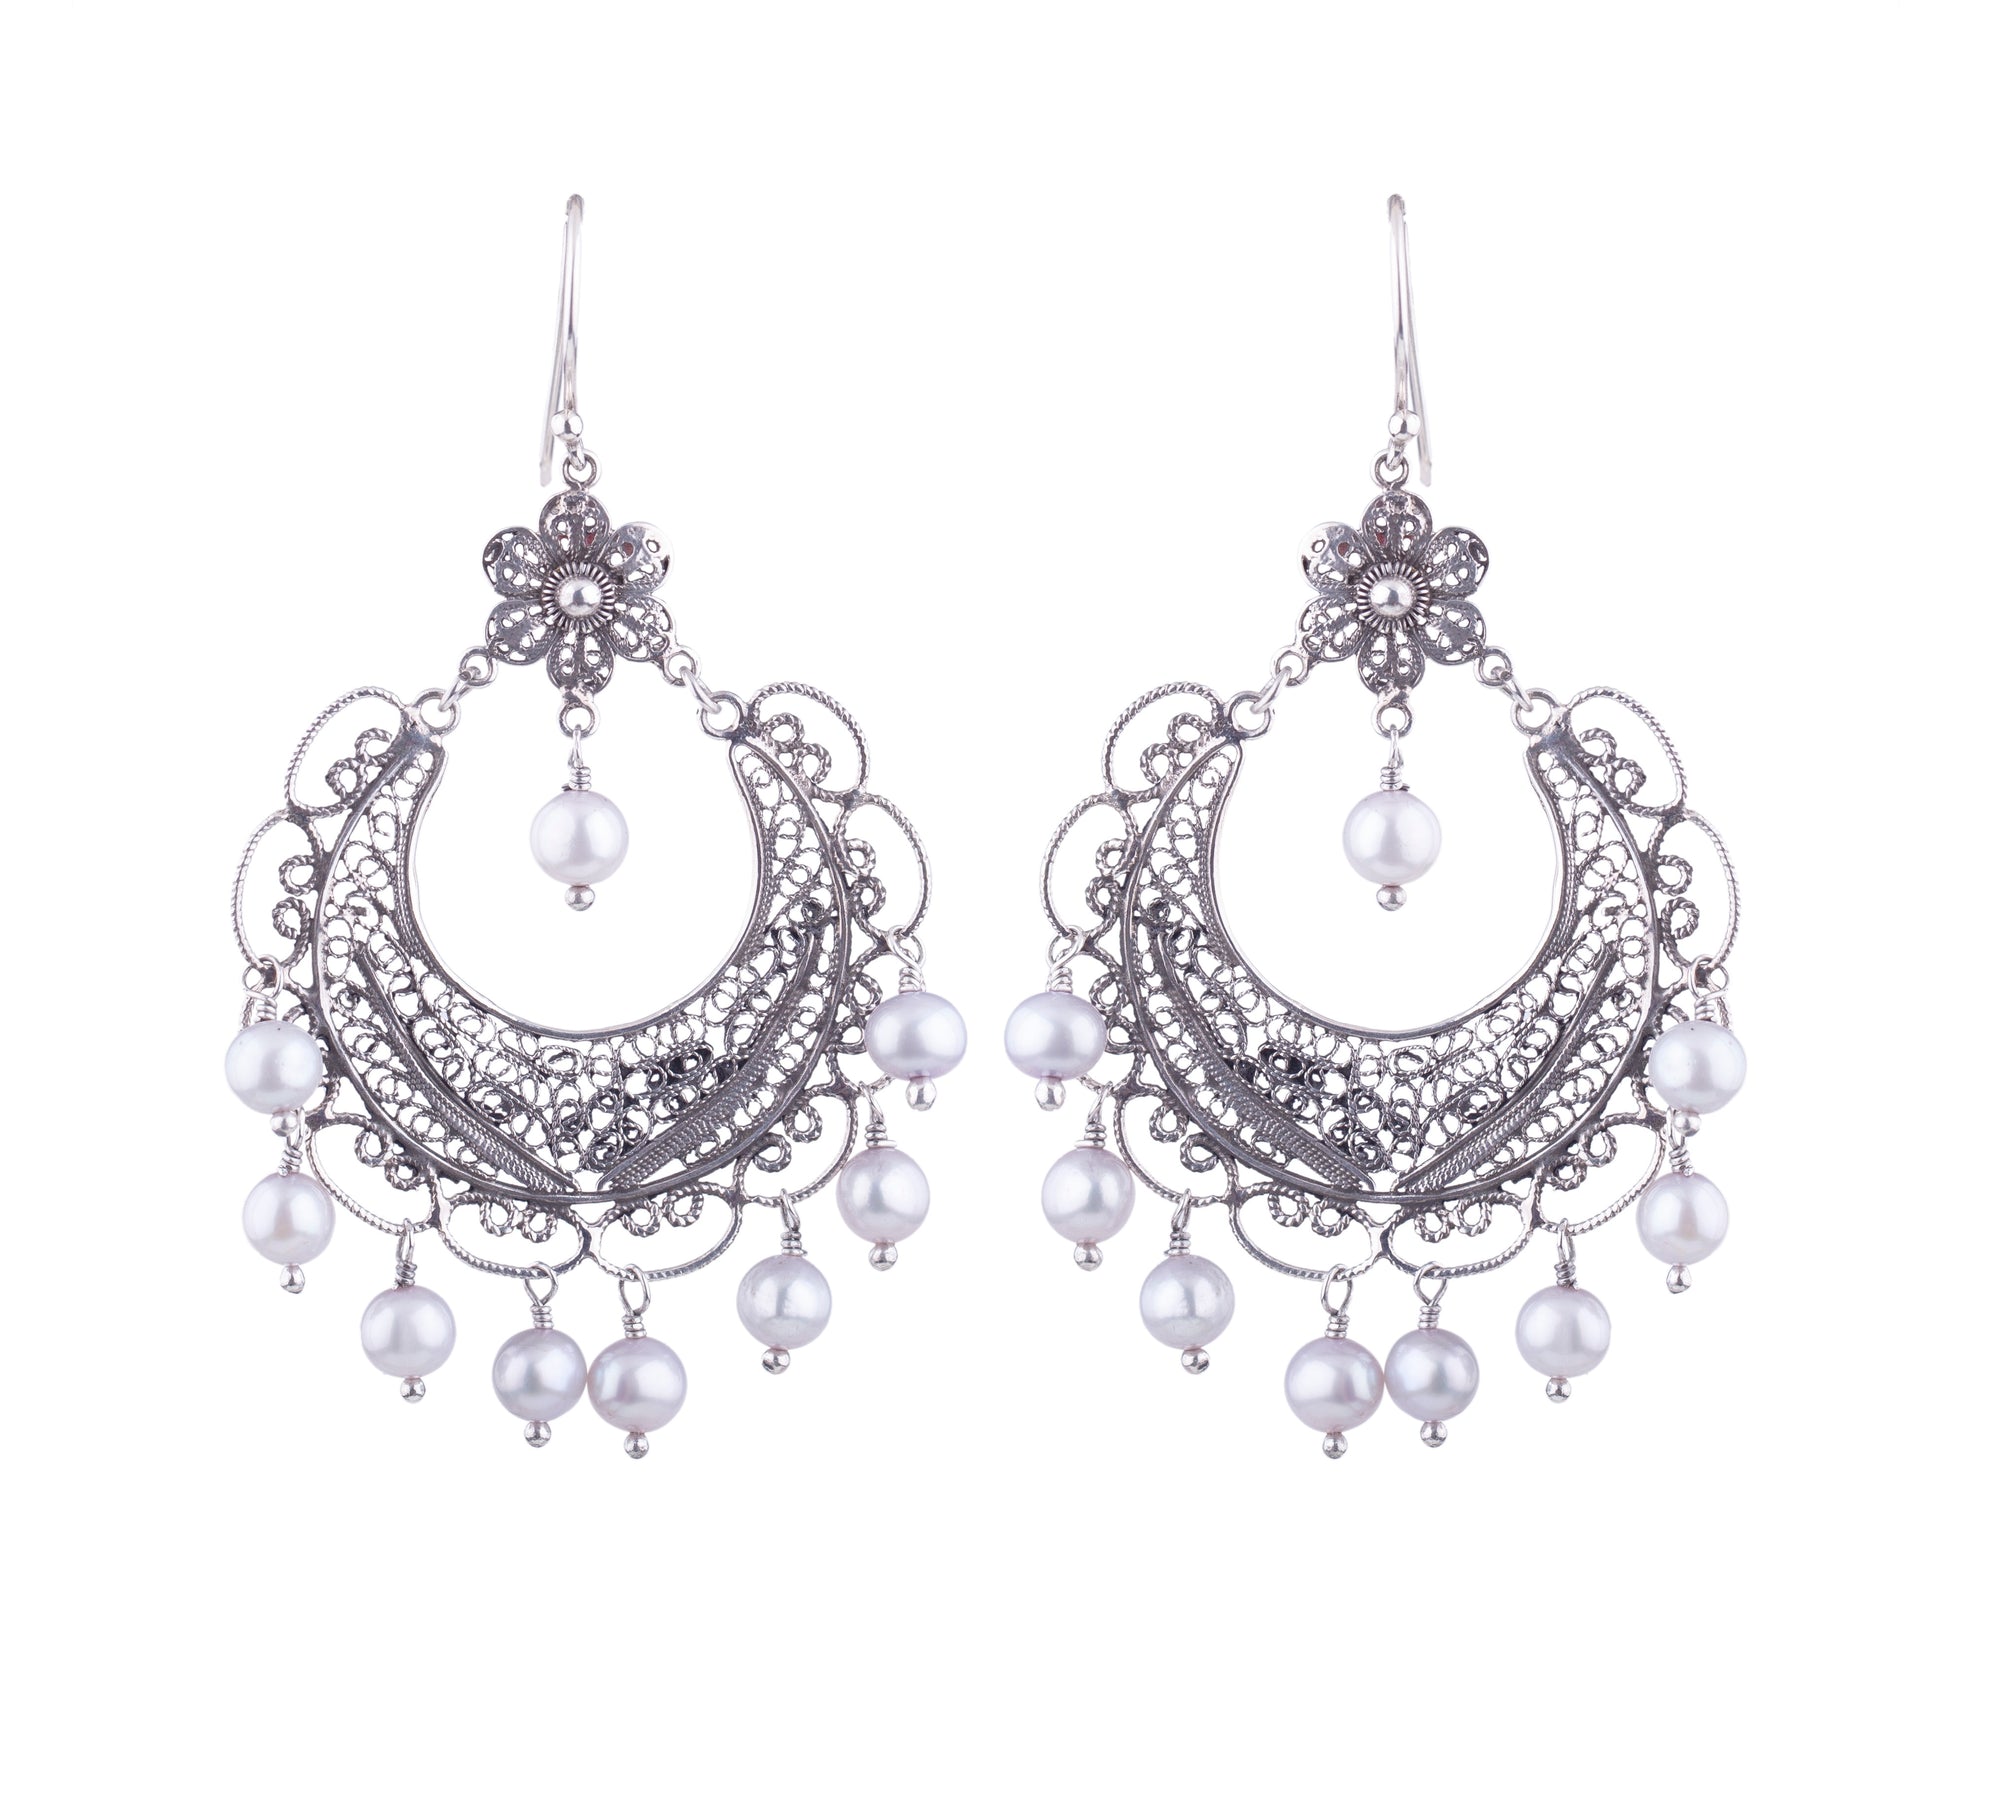 Frida chandelier earrings - Ice Blue pearls